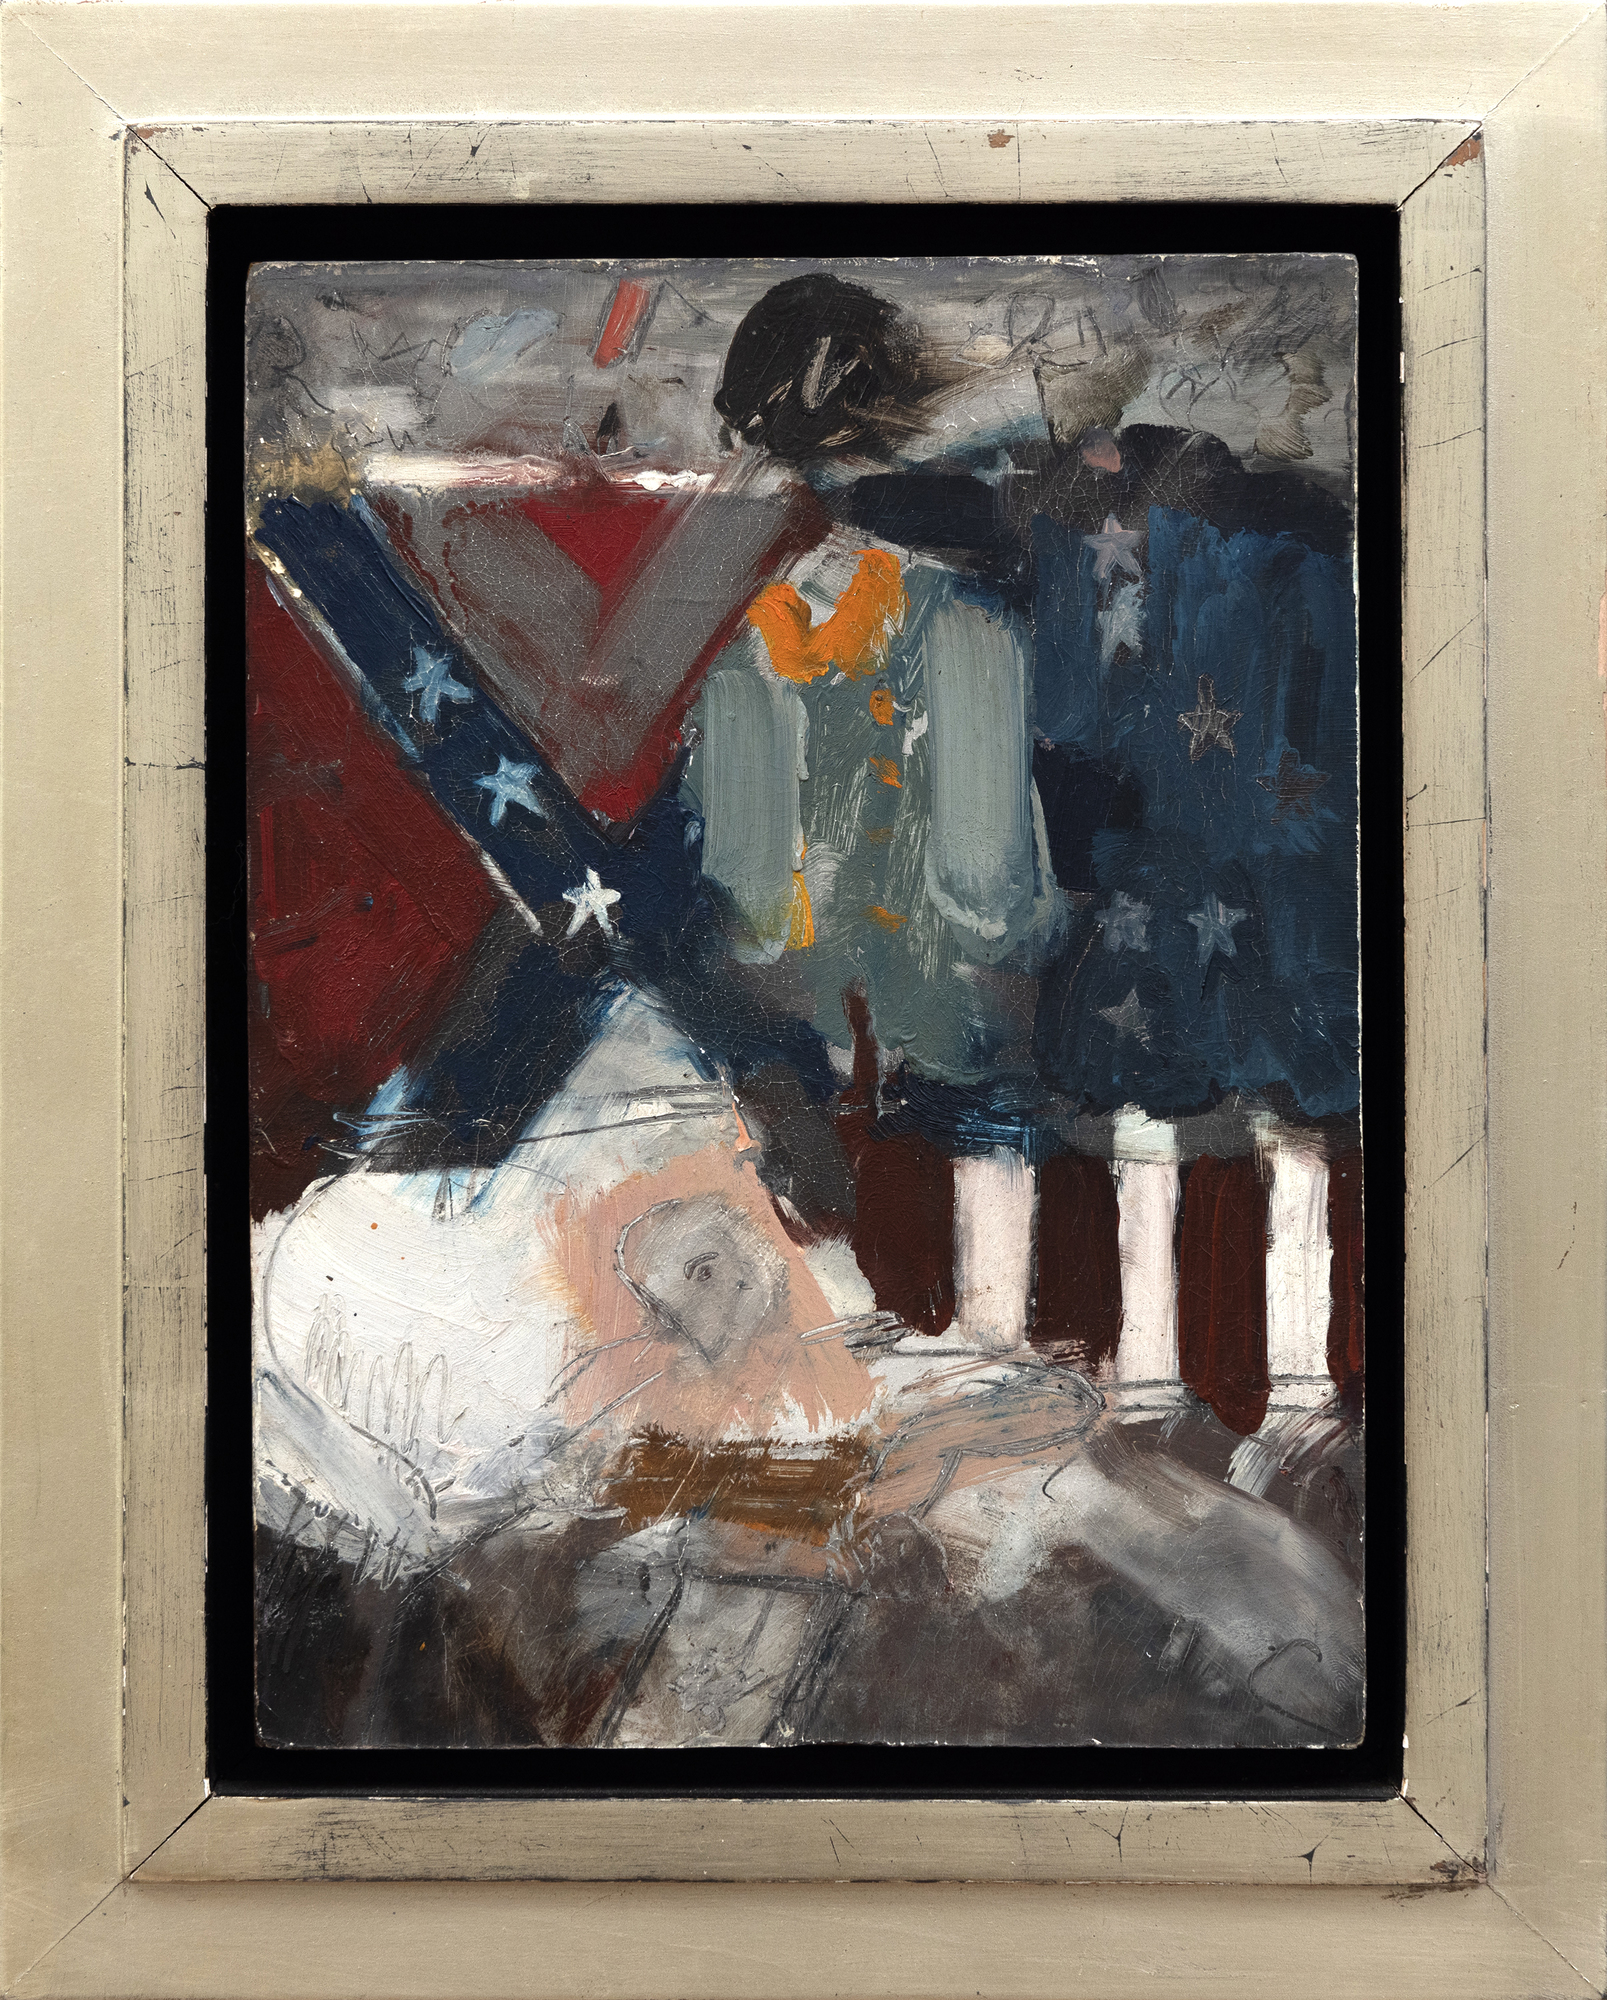 לארי ריברס, הידוע בשילוב אלמנטים של תרבות הפופ עם נושאים היסטוריים החוקרים את המורכבות של הזהות האמריקאית, הזיכרון והזמן החולף היה בעל משיכה בולטת למלחמת האזרחים. הסדרה "ותיקי מלחמת האזרחים האחרונה" החלה ב-1959, בעיצומו של עידן זכויות האזרח, ונלקחה מתצלום של מגזין לייף של אדם שנחשב לוותיק האחרון ששרד מאותו סכסוך. הוותיק, מרותק למיטתו ושוכב מתחת לדגלי הקונפדרציה וארה"ב הטעונים רגשית, מחזיק בנוכחות אוונסנטית המבוטאת באמצעים הפשוטים ביותר. עם פלטת צבעים עשירה ואינטנסיבית ועבודת מכחול דינמית ואקספרסיבית, ריברס מסתיר בחוכמה פרטים עדינים יותר, משאיר הרבה מהנרטיב והאופי המהותיים שלו מעורפלים תוך שמירה על אווירה של חוסר ודאות דו-משמעי.